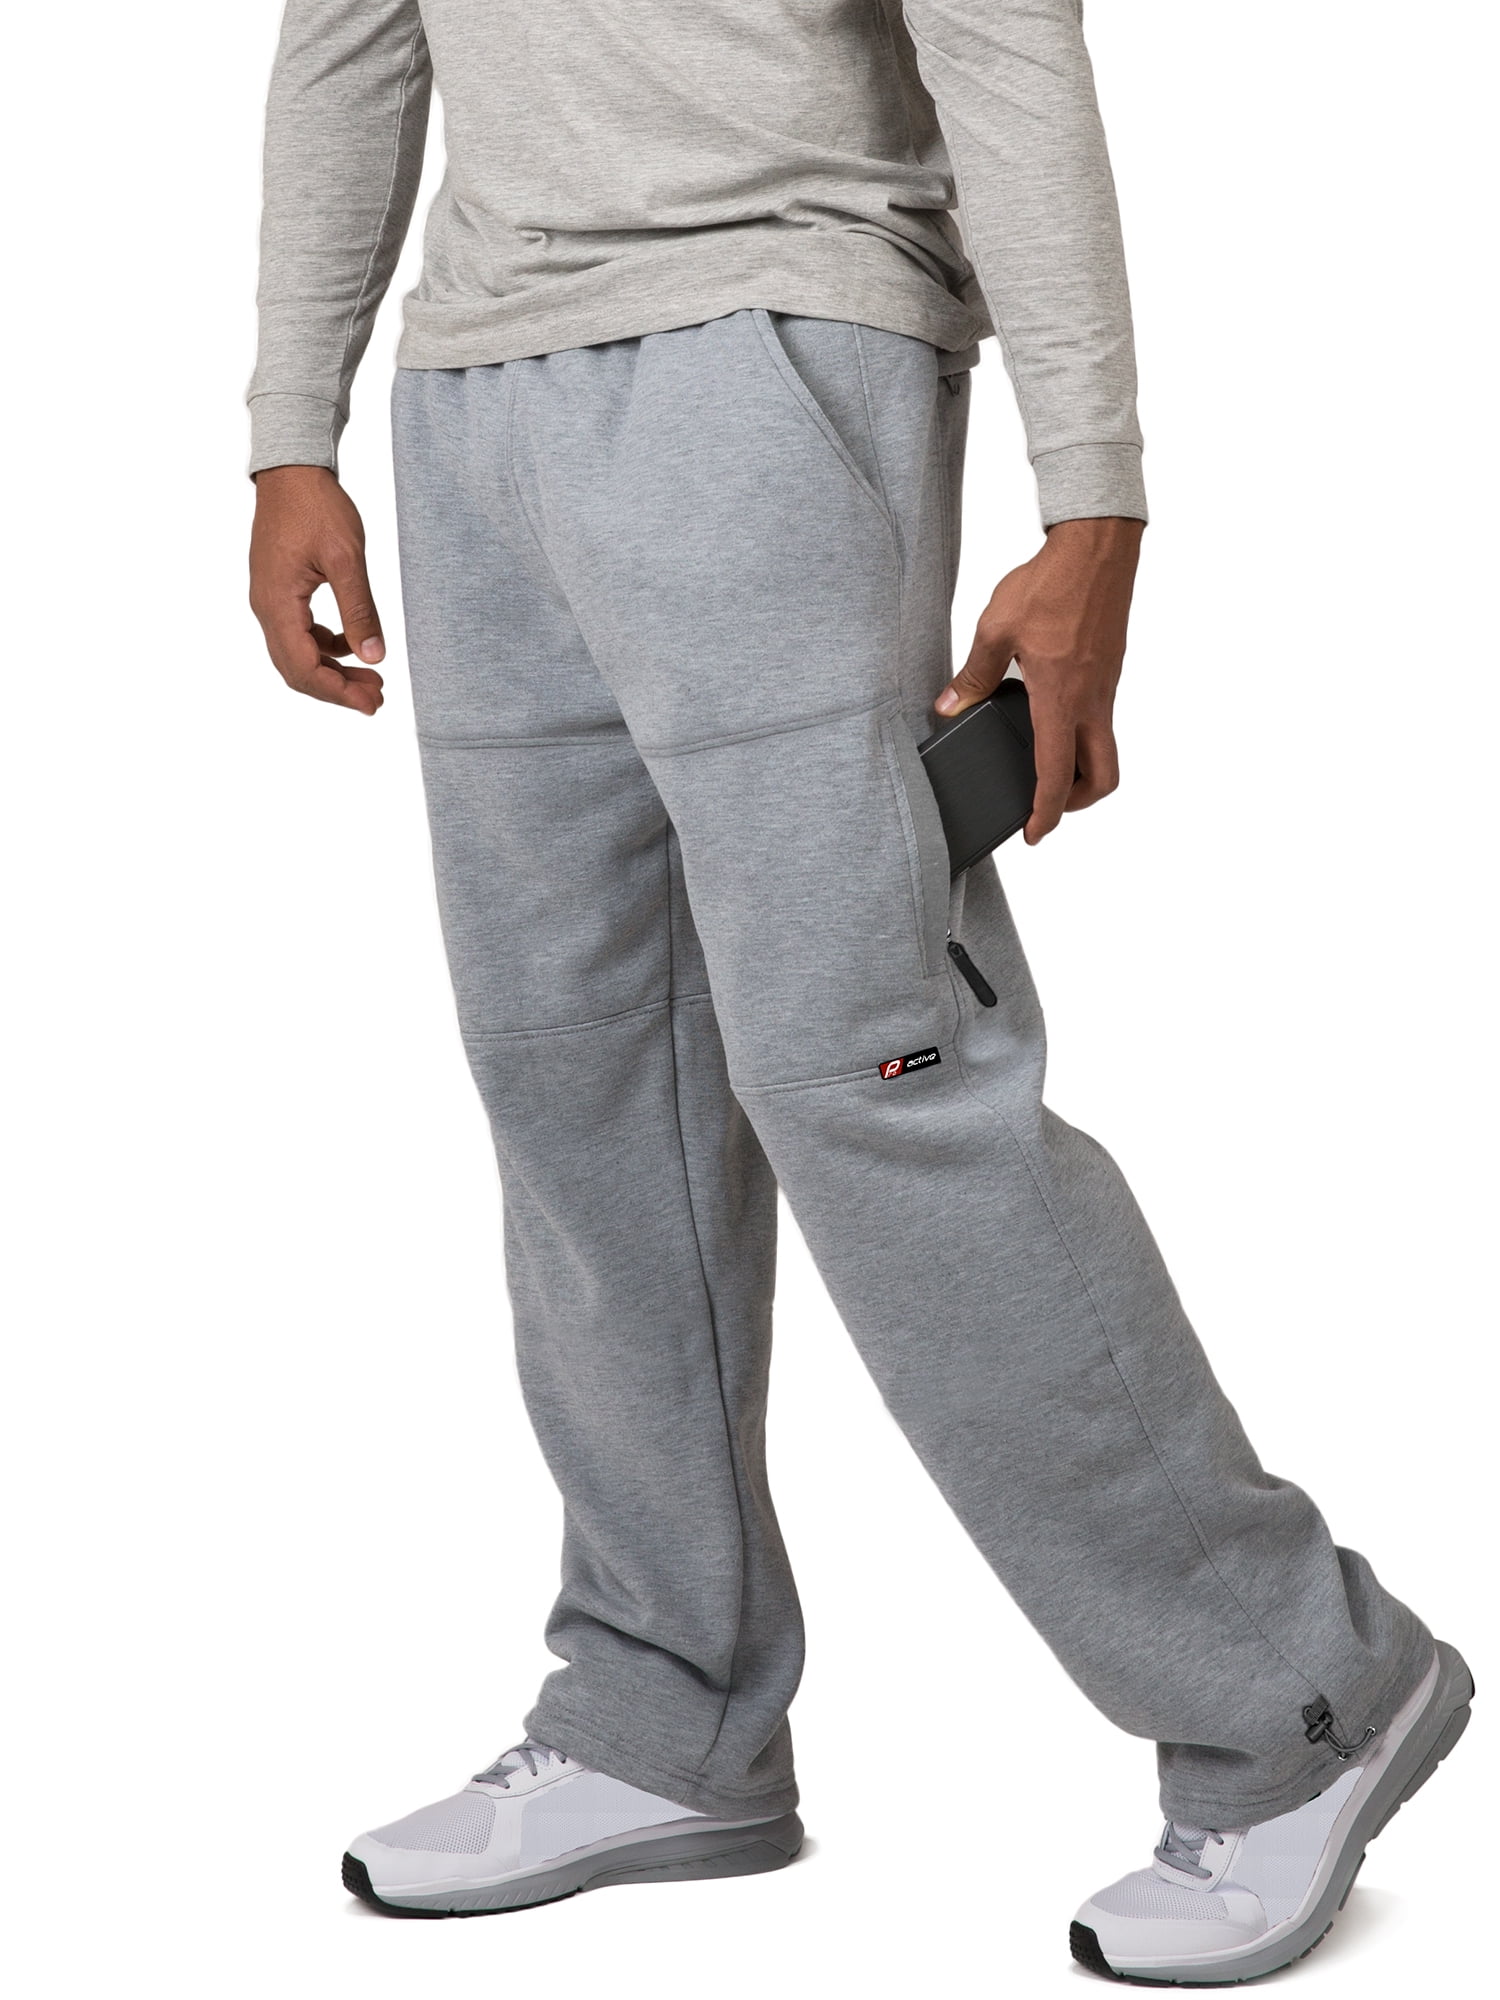 Vibes Men's Cargo Zipper Pocket Sweatpants Adjustable Bungee Cord open ...